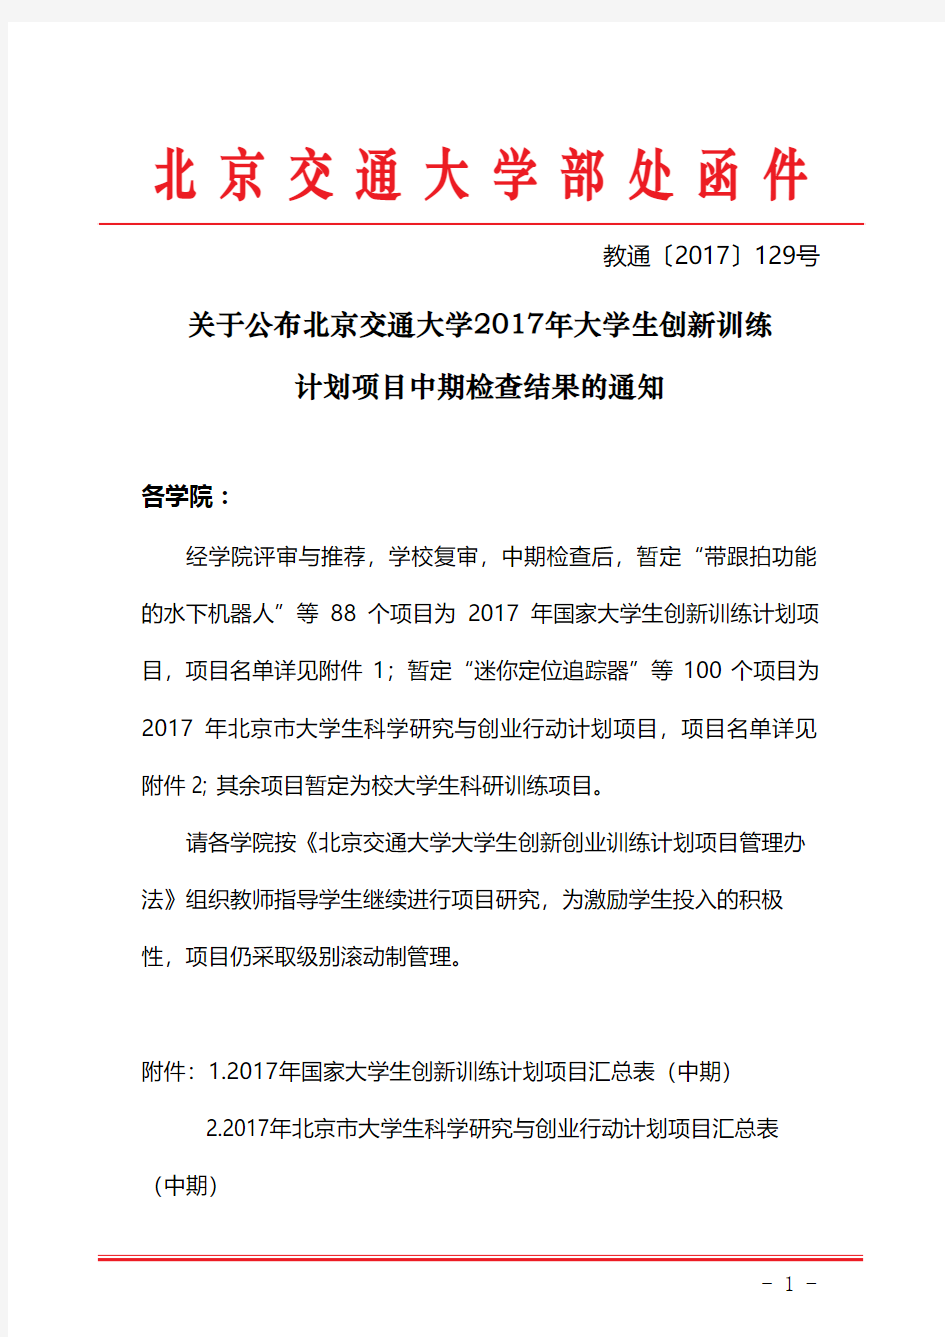 北京交通大学部处函件线上细下粗3000份-经济管理学院